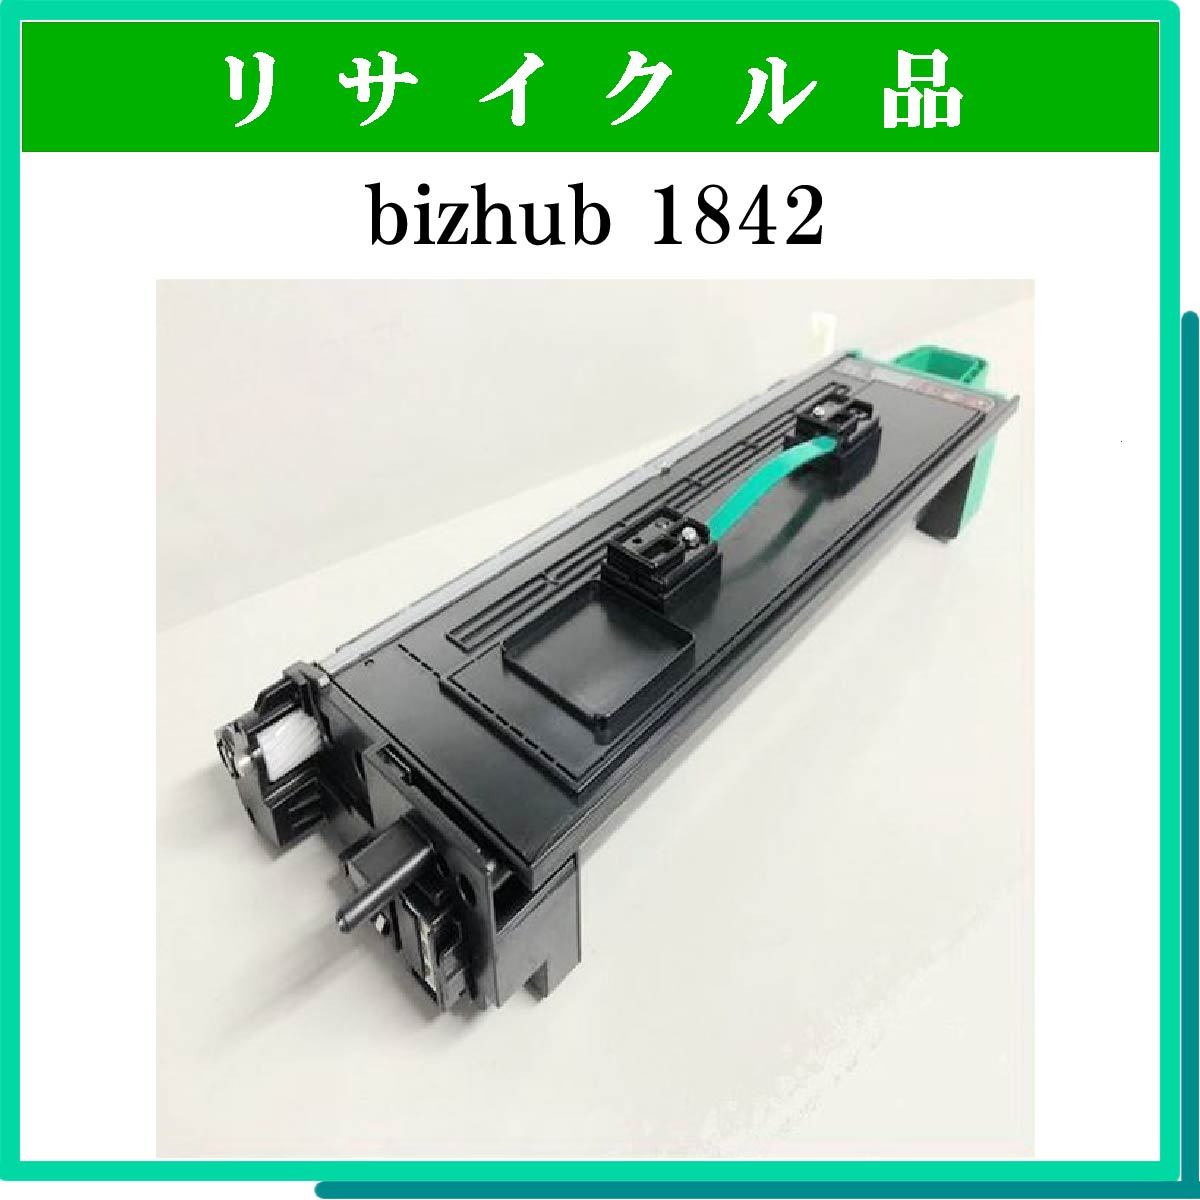 bizhub 1842 (大容量)